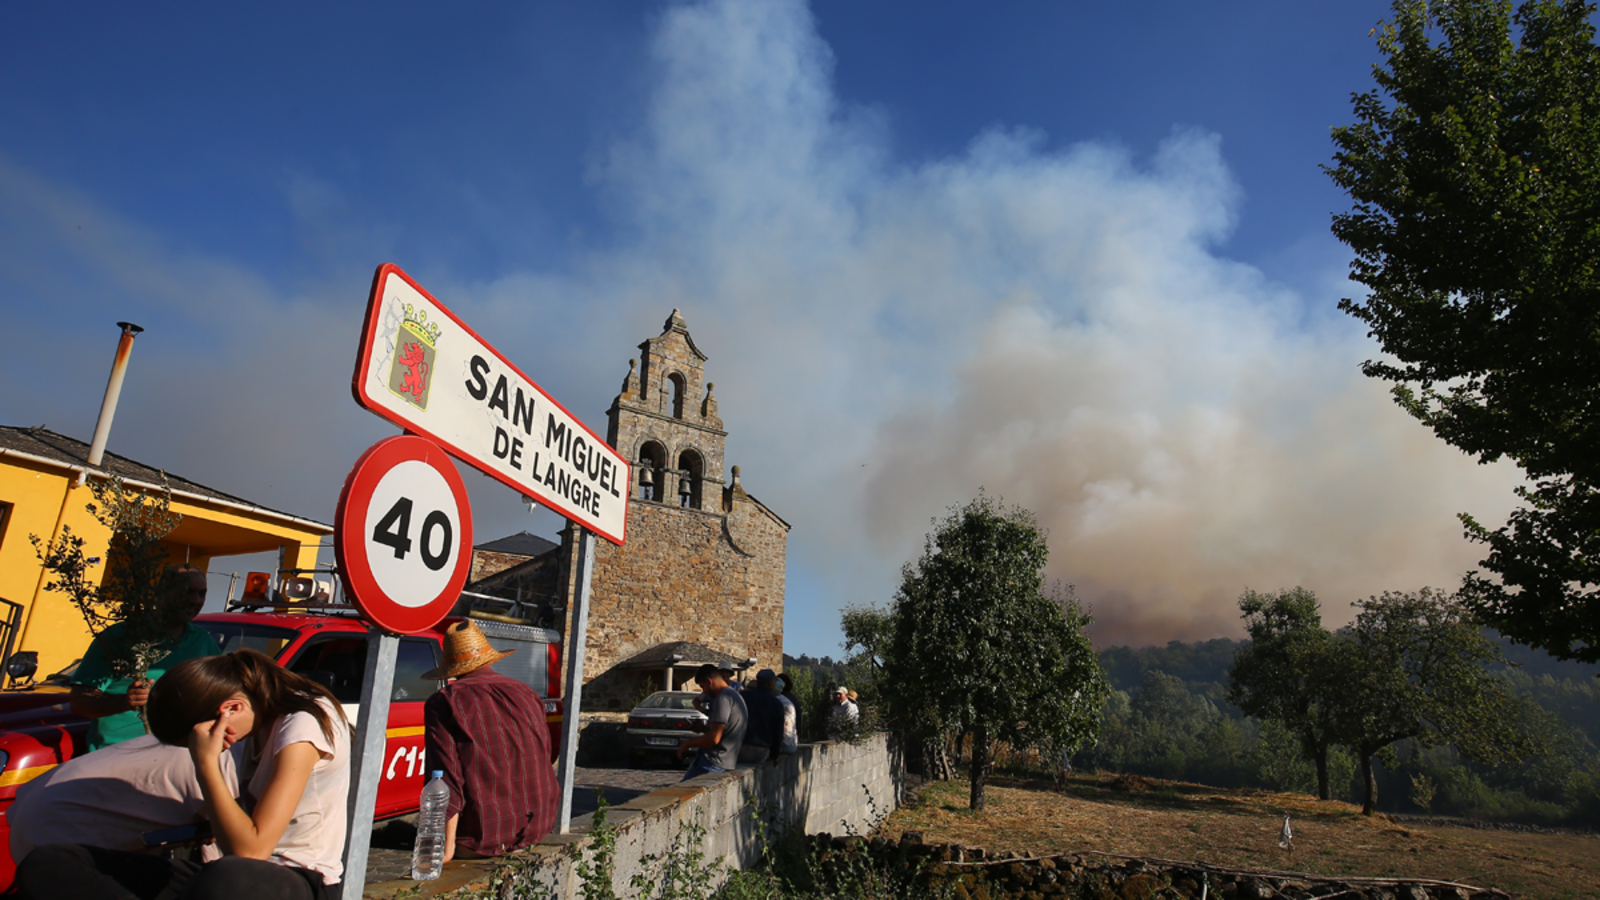 Fuego producido en San Miguel de Langre. | ICAL